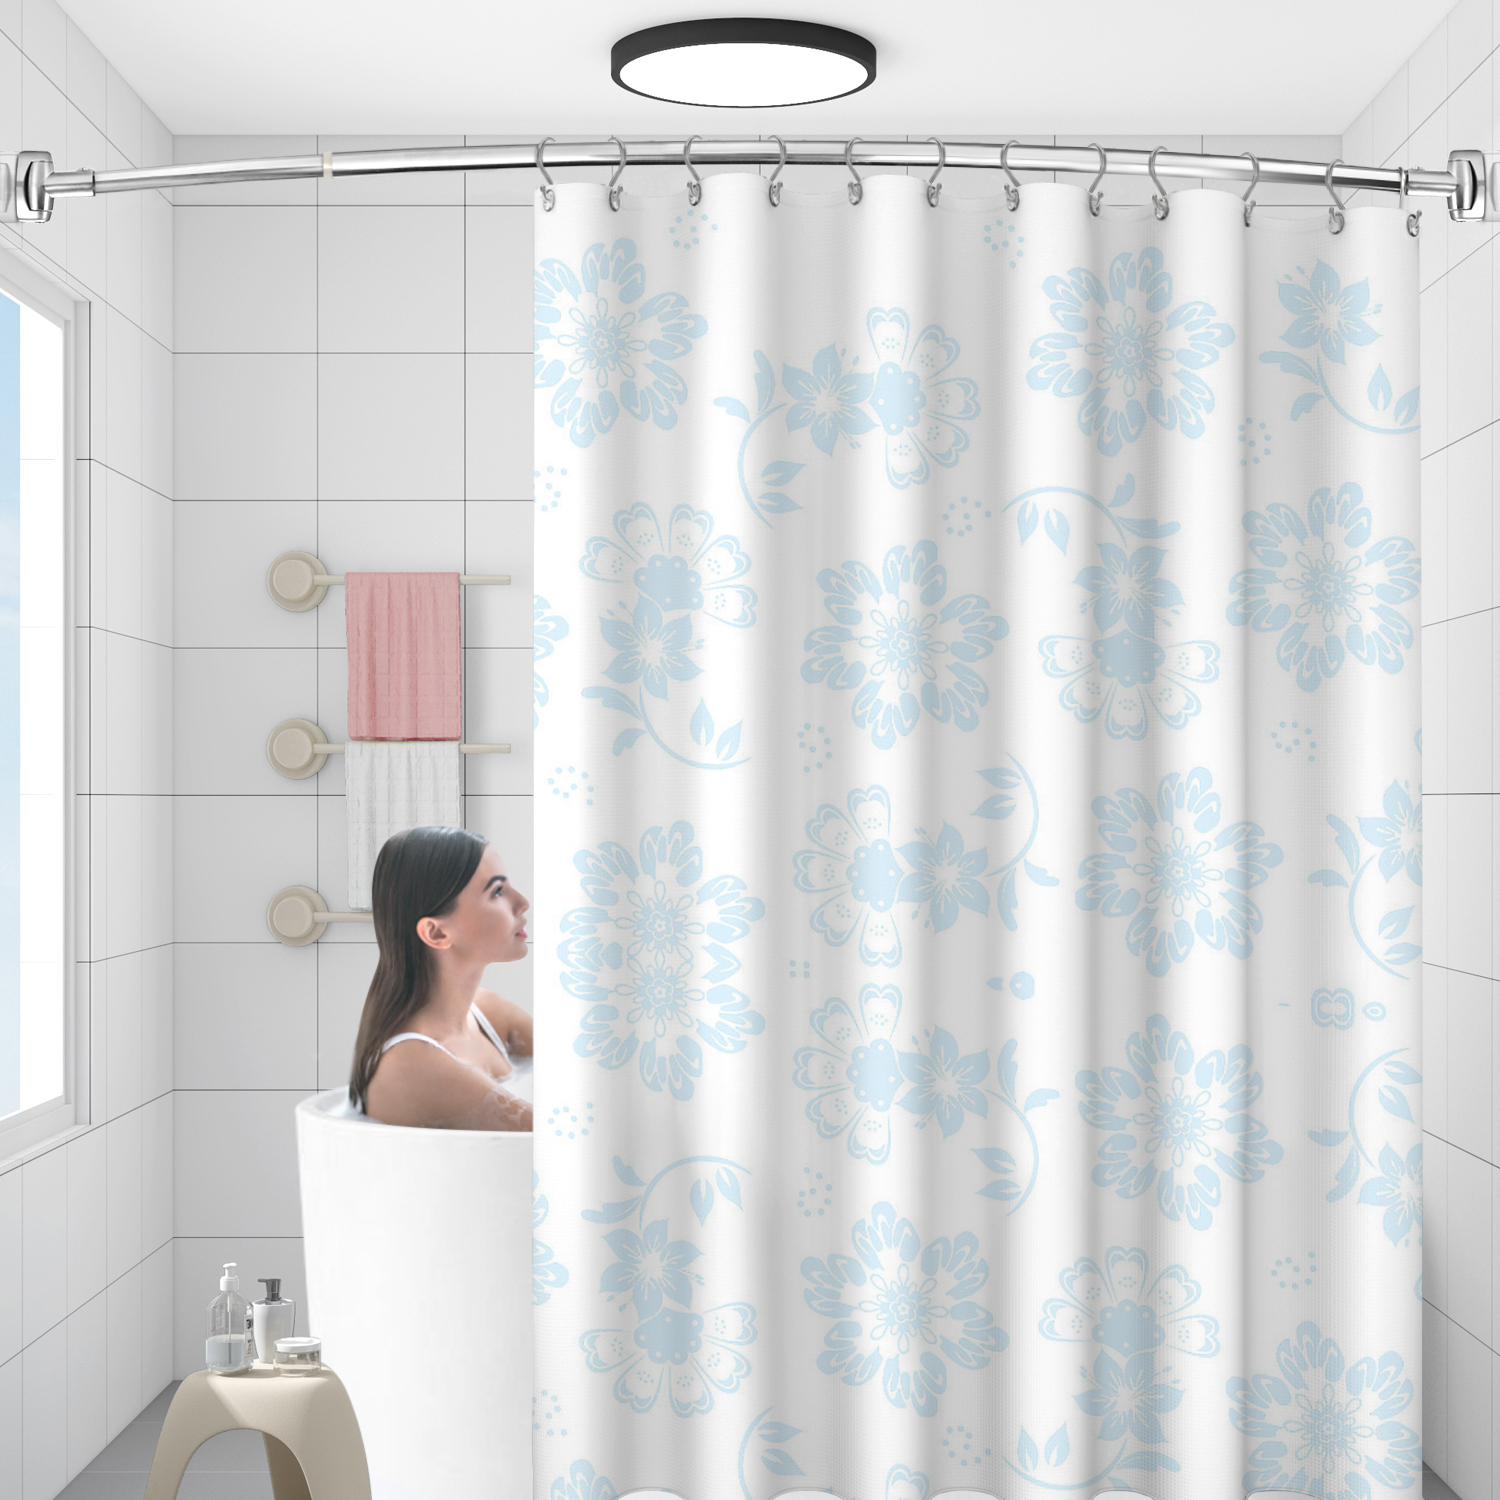 Exquisite verchromte, verstellbare, abgerundete, gebogene Duschstangen aus Edelstahl, maßgeschneidert für die Badewanne